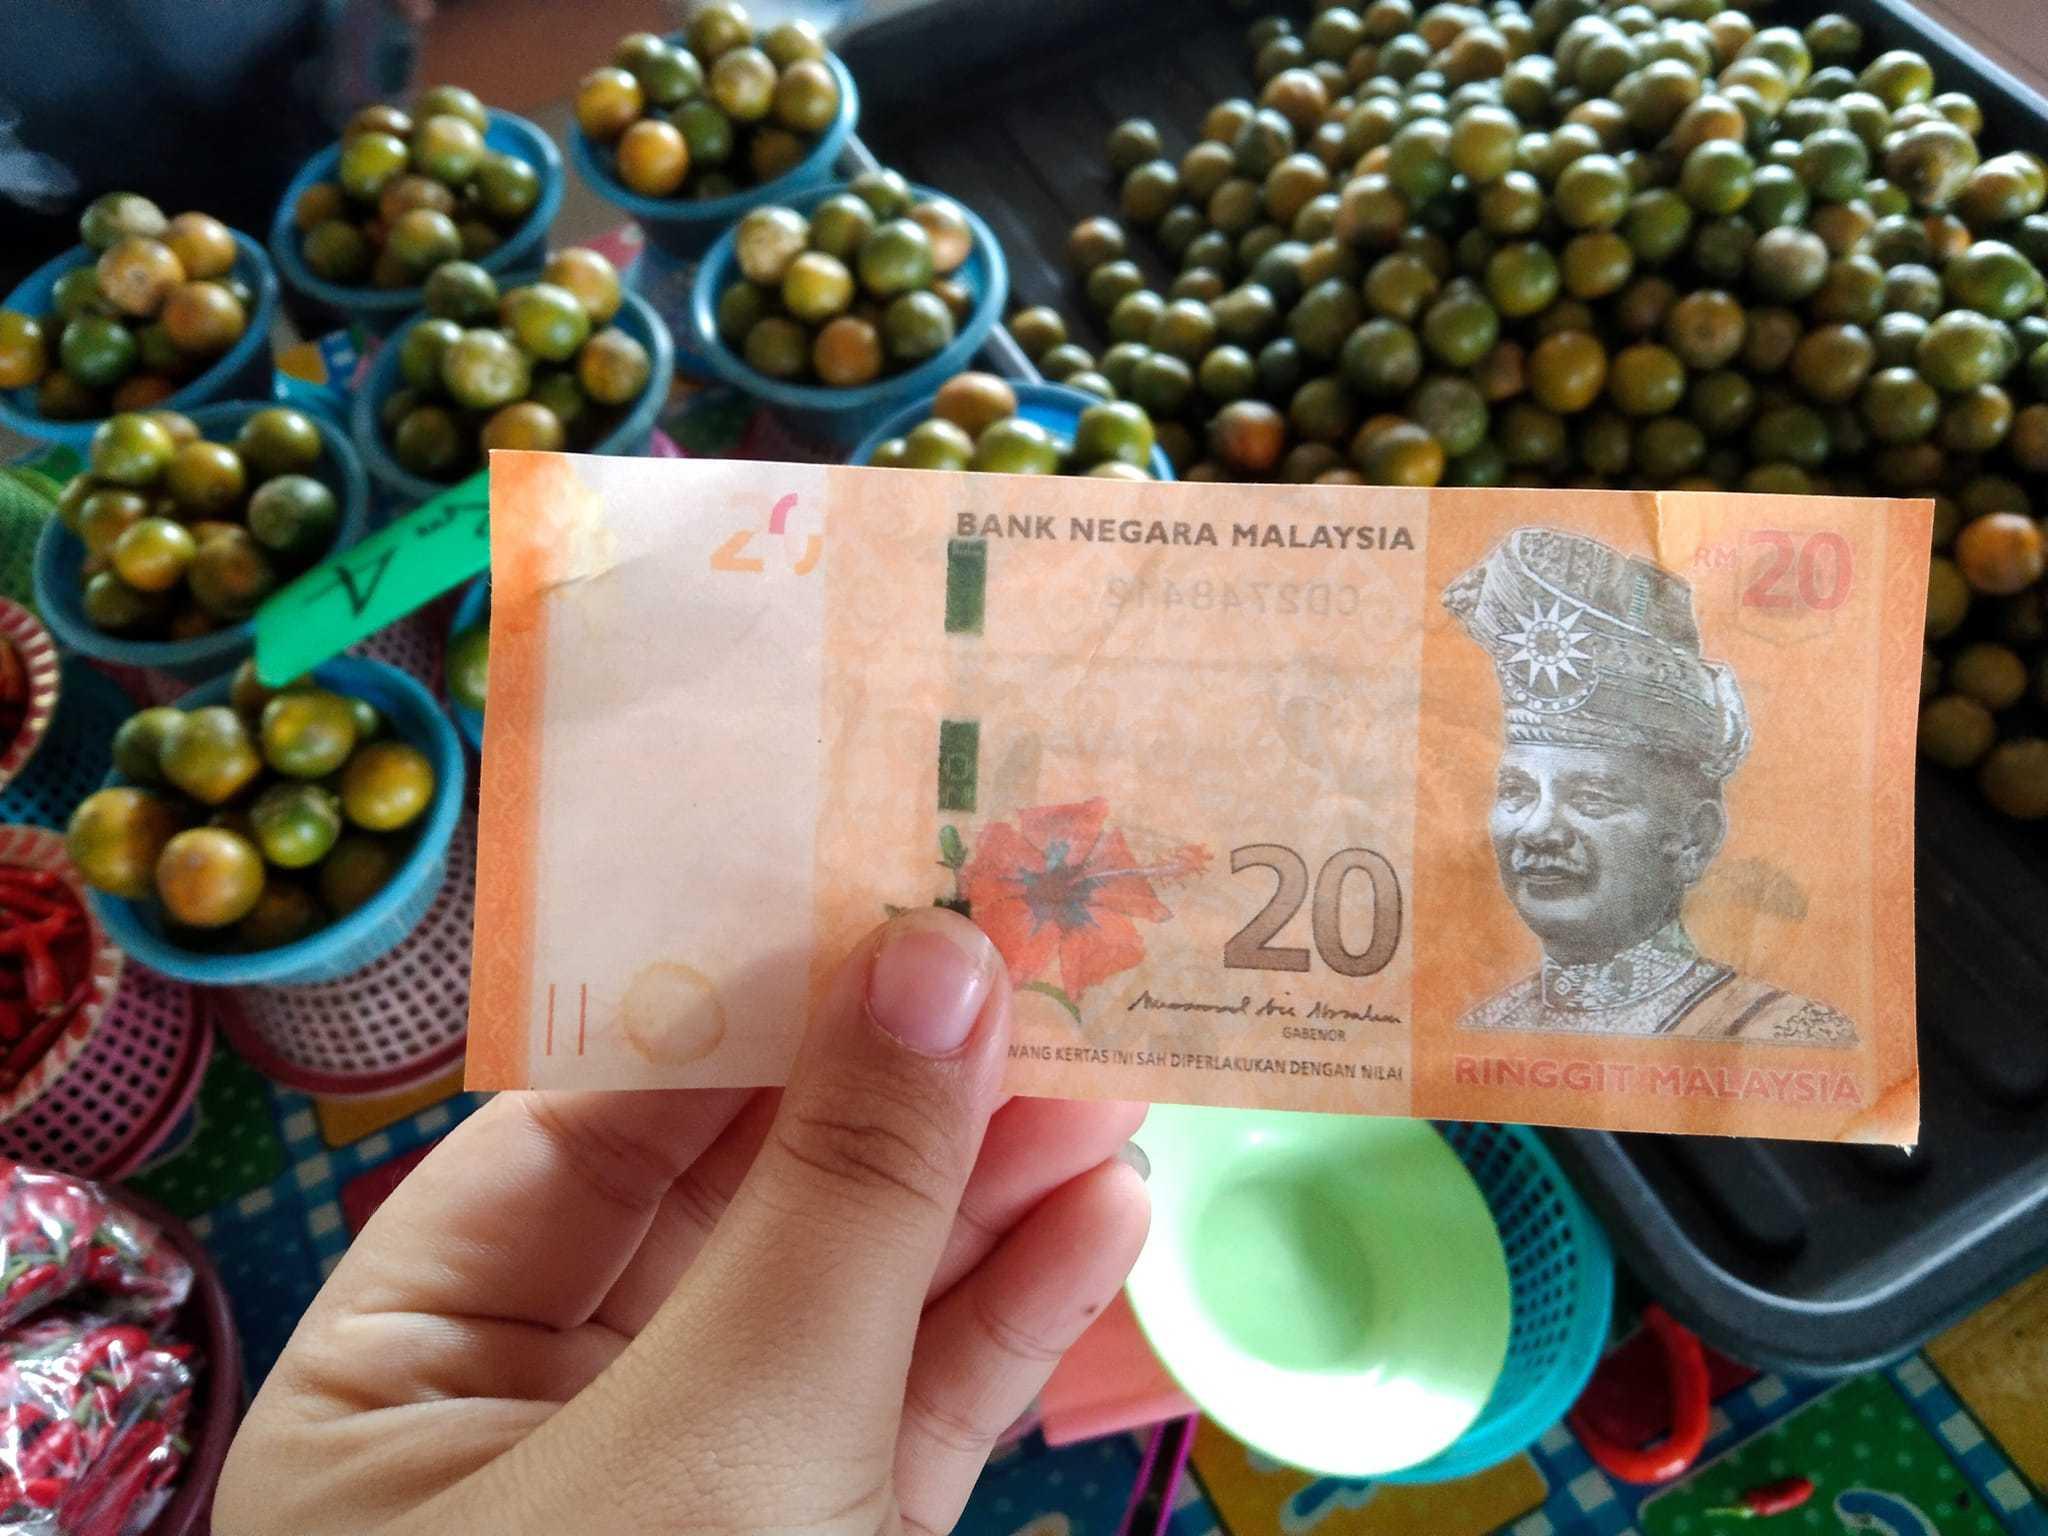 Wang kertas palsu RM20 yang diterima beberapa peniaga Pasar Tamu Sibu Jaya, 31 Januari. Gambar: Facebook